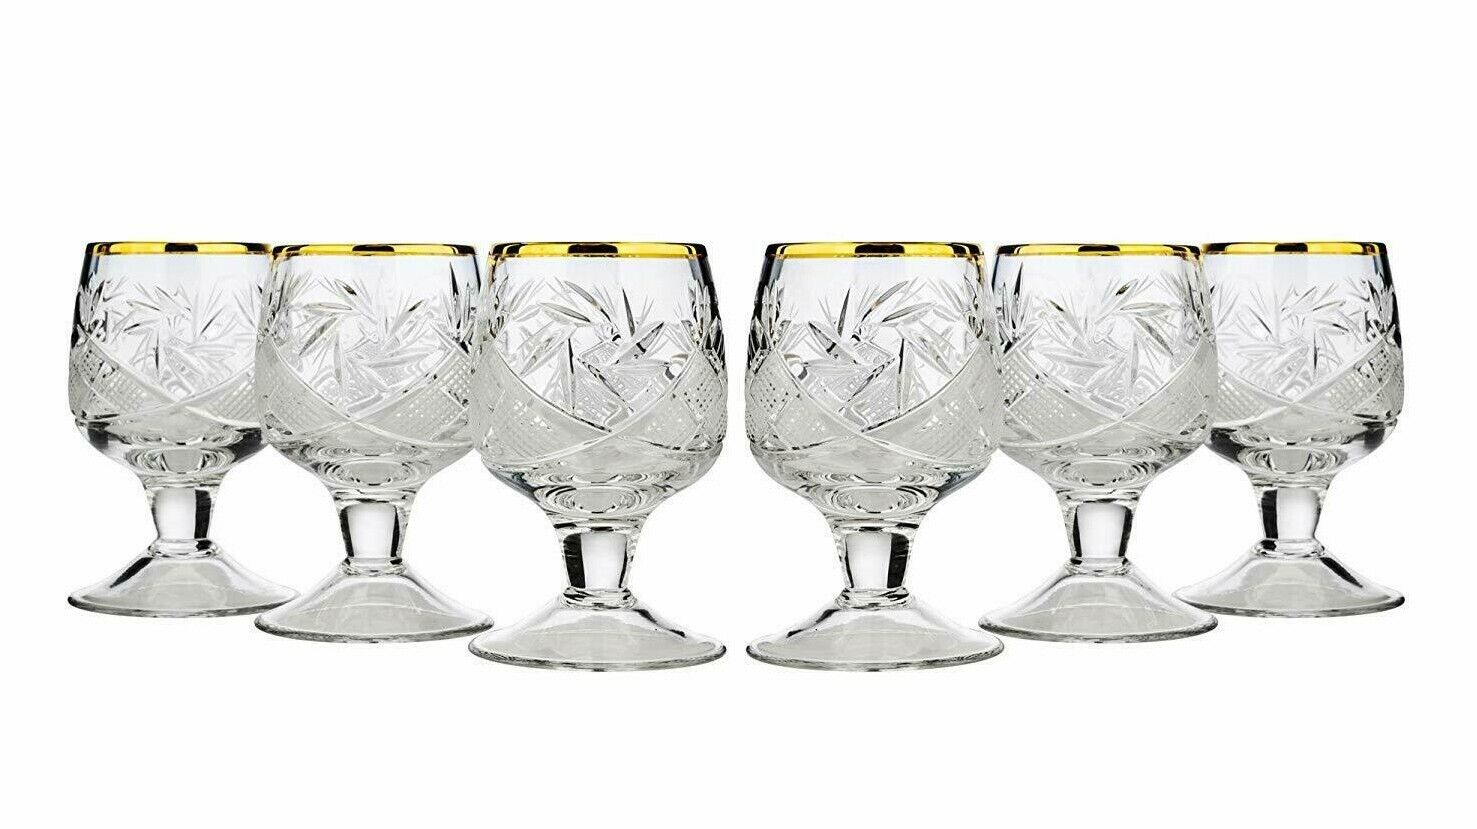 Set of 6 Russian 24K Gold Trim Shot Glasses 1.7 oz - Soviet Vodka Glassware